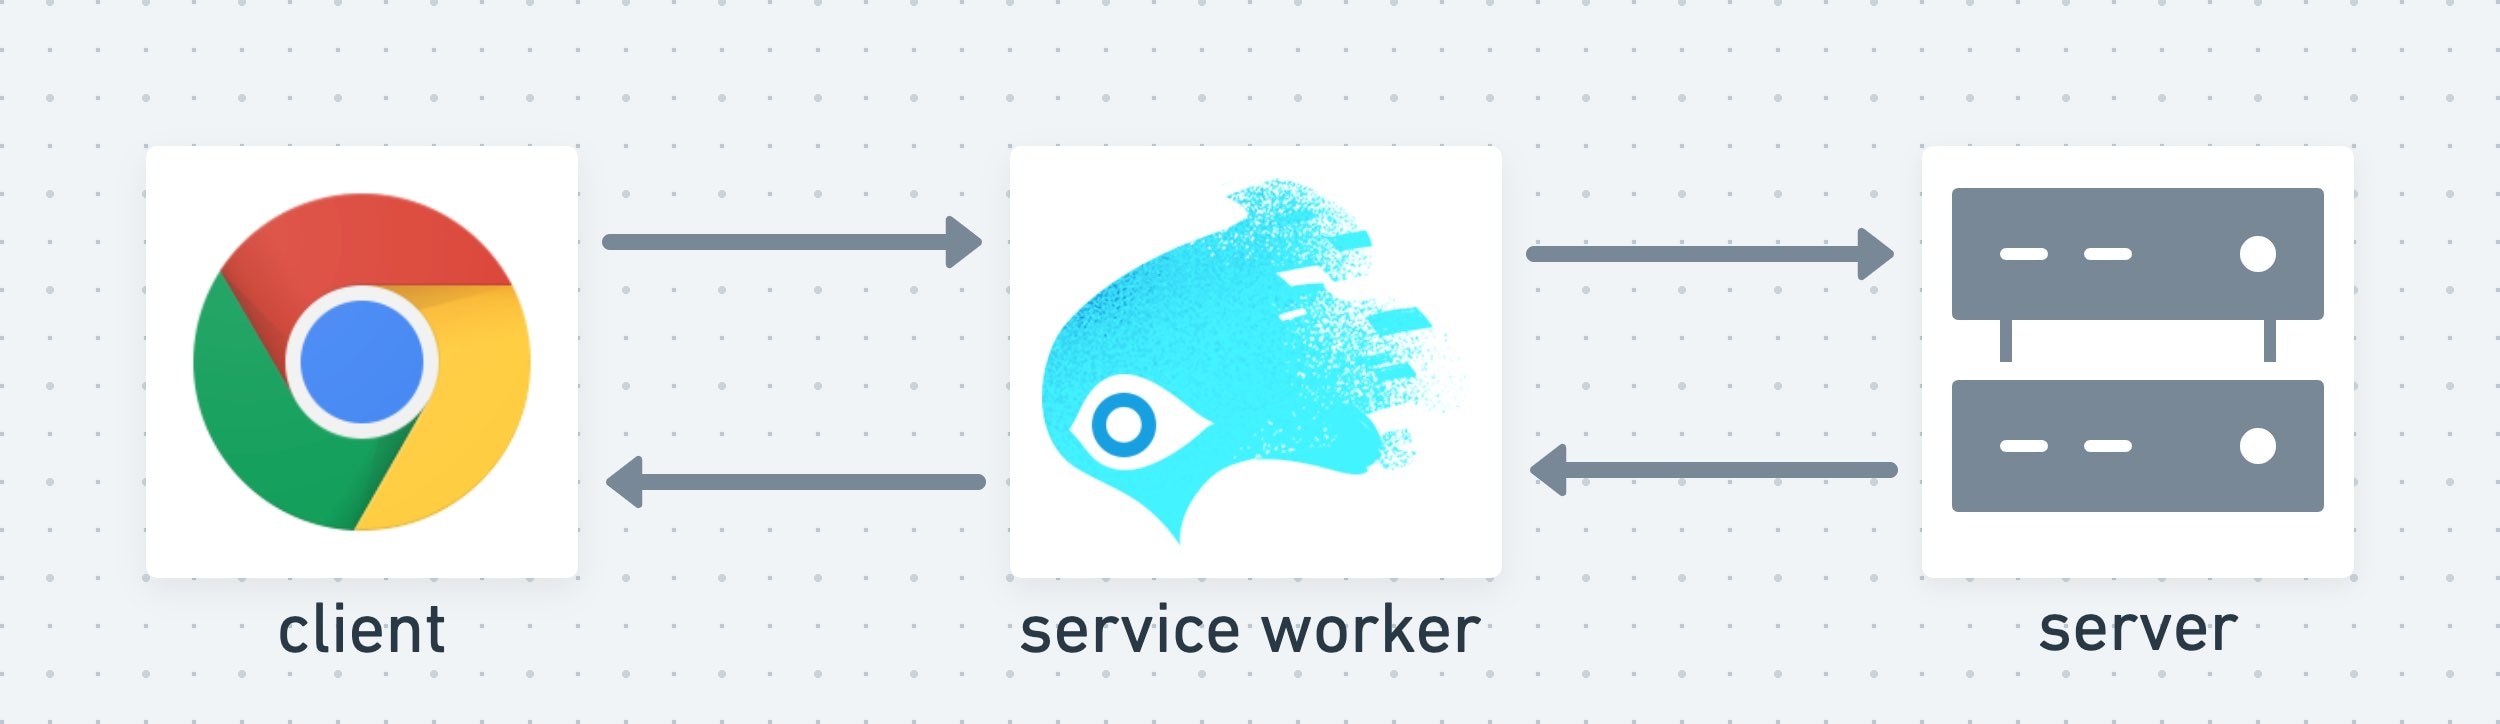 Сервис-воркер выступает в качестве промежуточного уровня между клиентом и сервером.